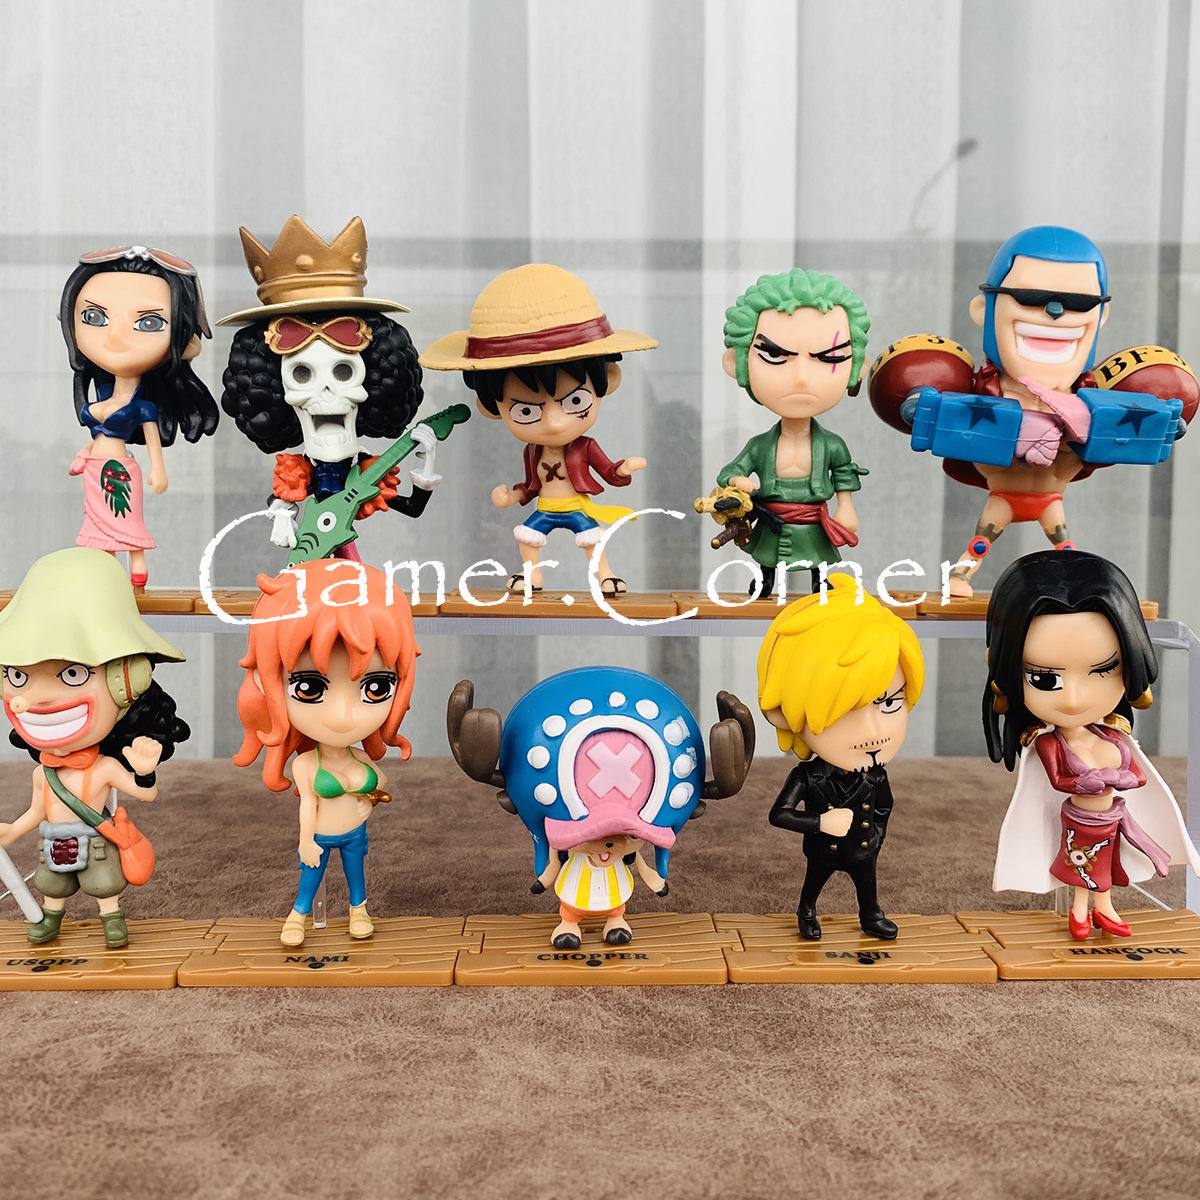 One Piece Nhân Vật - các nhân vật yêu thích của bạn đã sẵn sàng để được khám phá! Hãy lấp đầy trận đấu với những hình ảnh đầy sức mạnh!